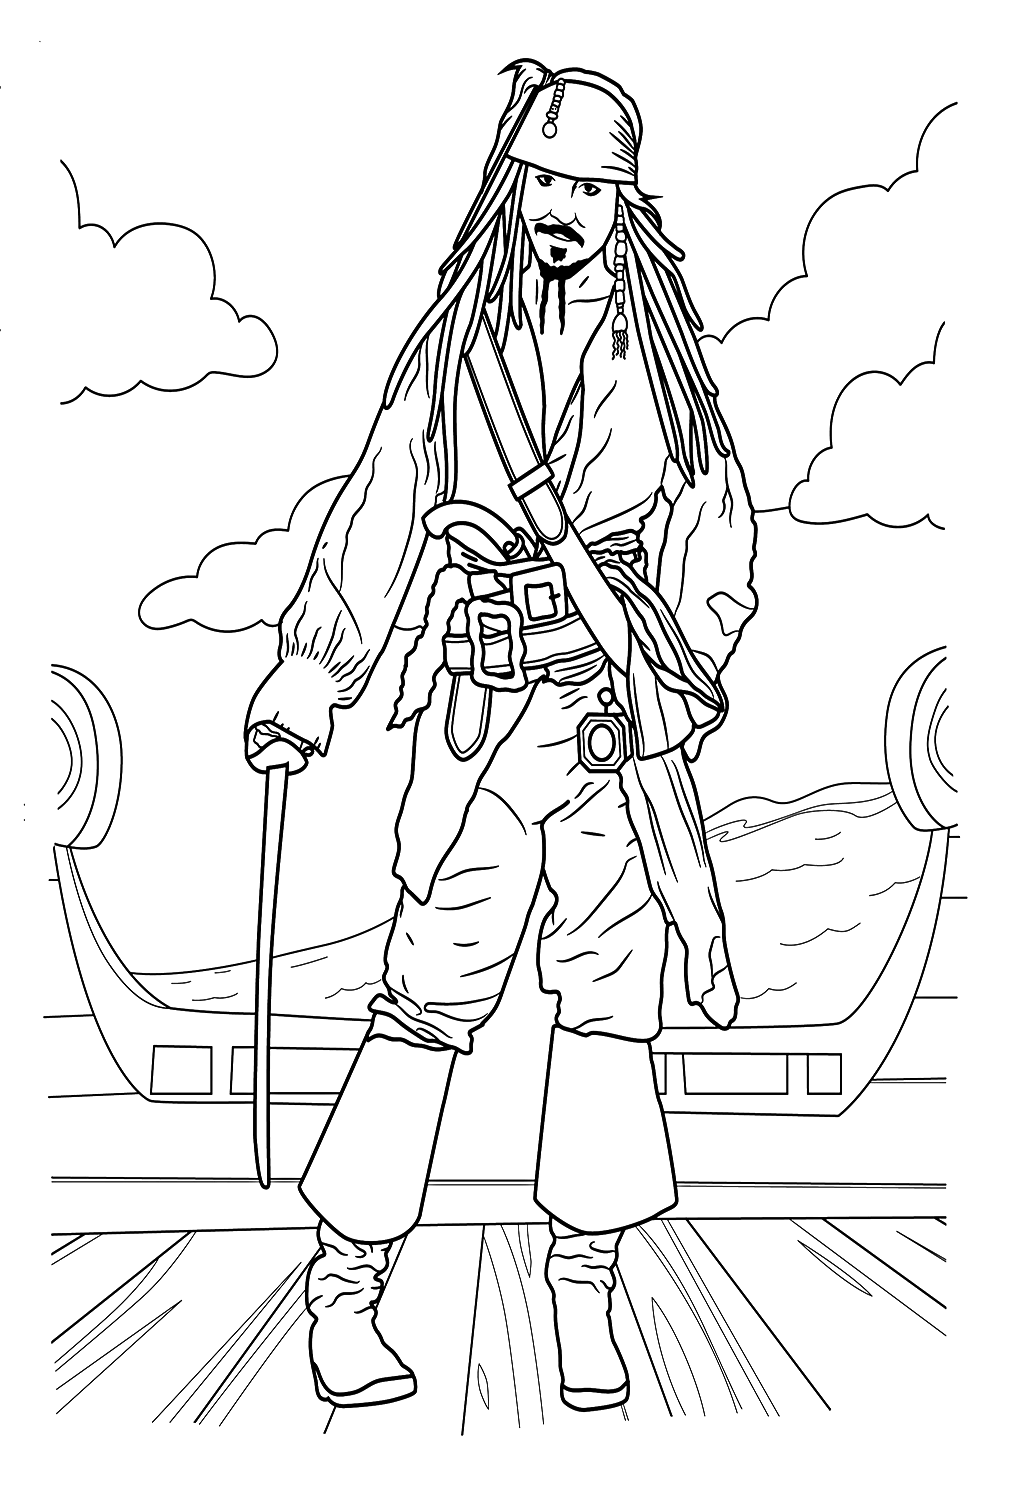 Dibujos para colorear de Jack Sparrow de Pirate